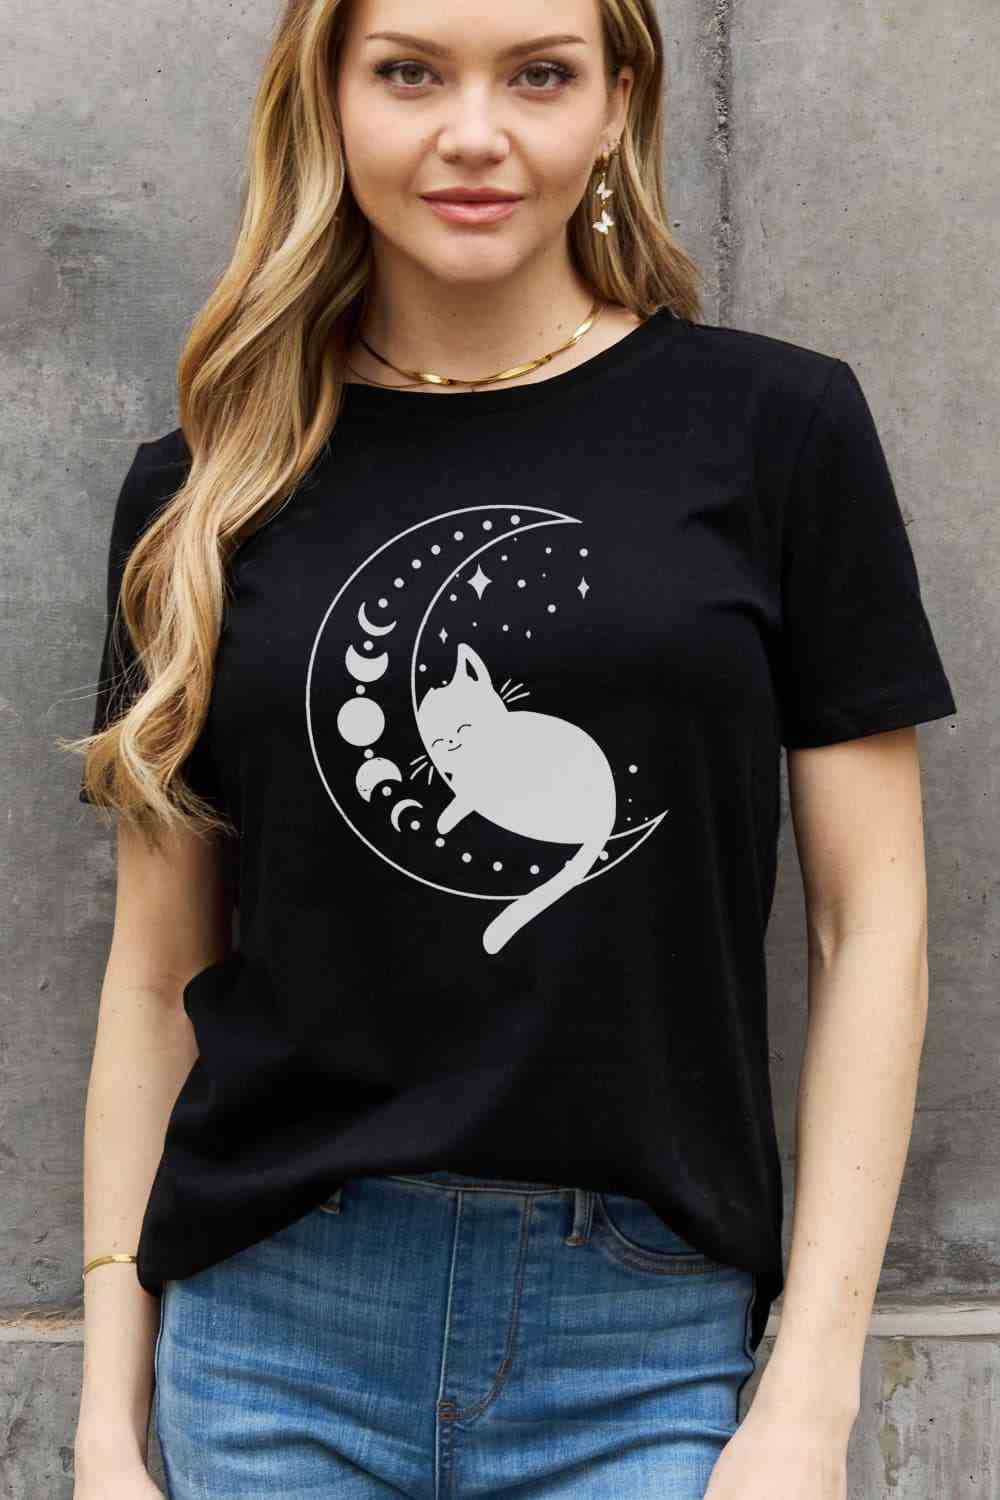 Camiseta de algodón con estampado de gato y luna de tamaño completo de Simply Love